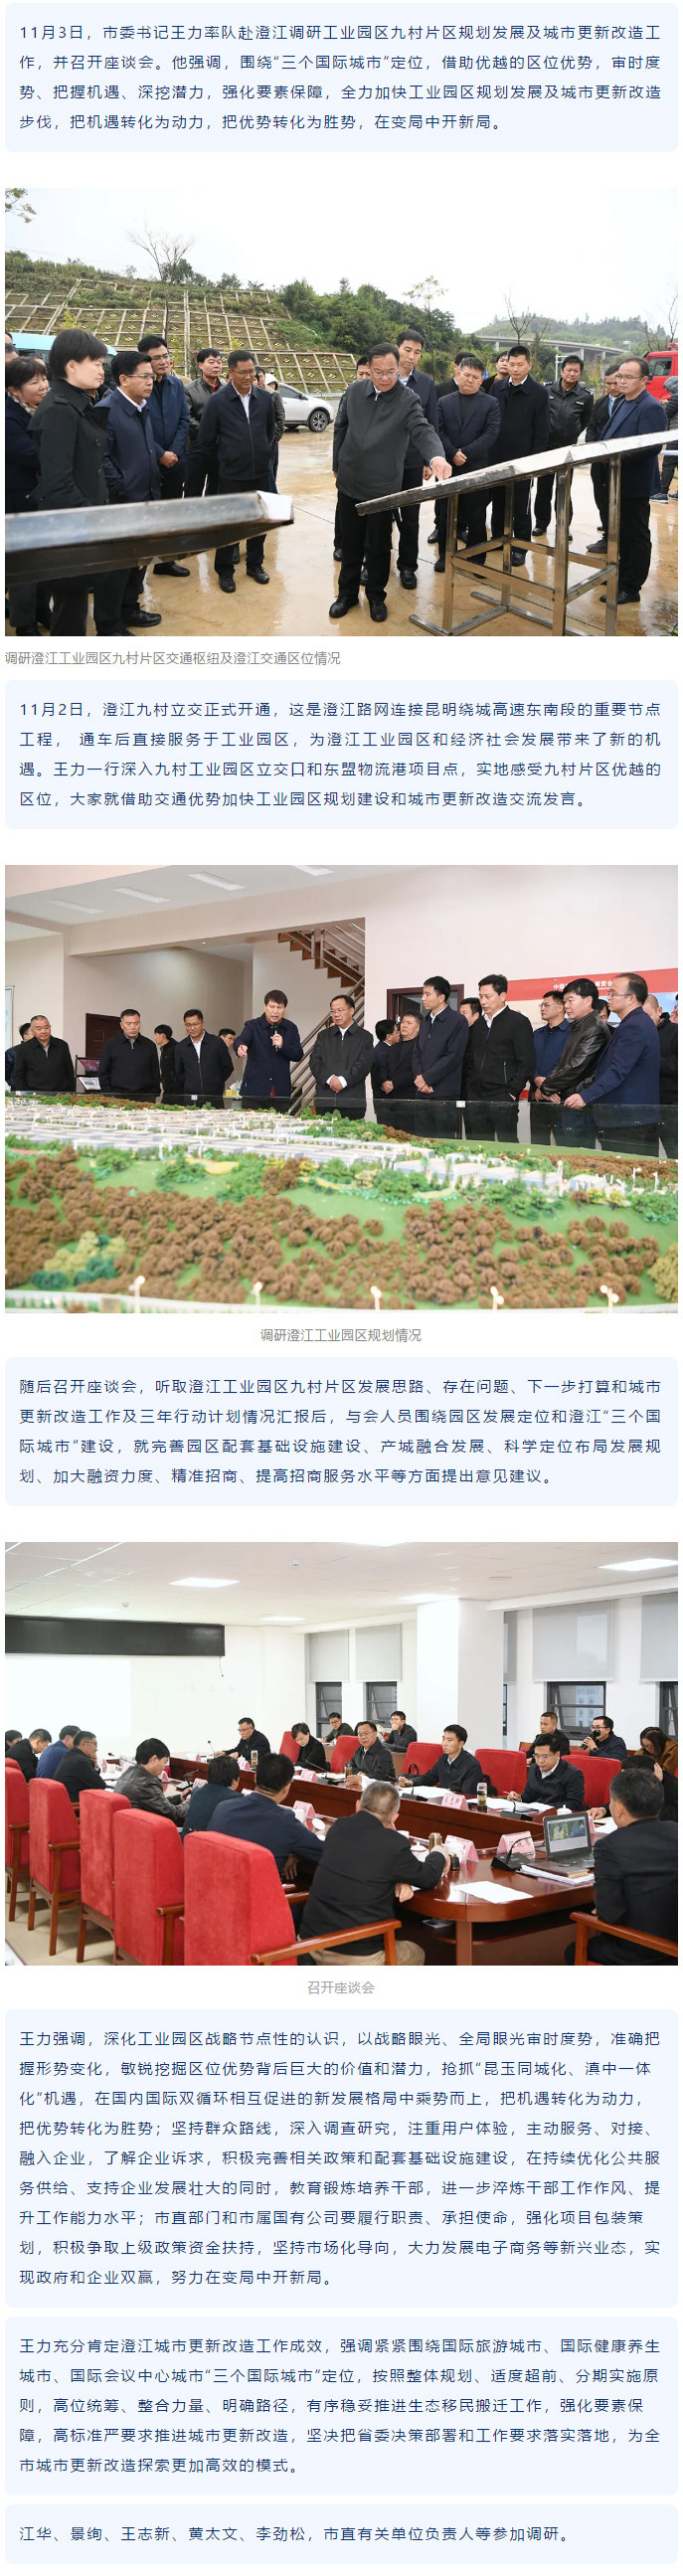 澄江工业园区规划发展及城市更新改造